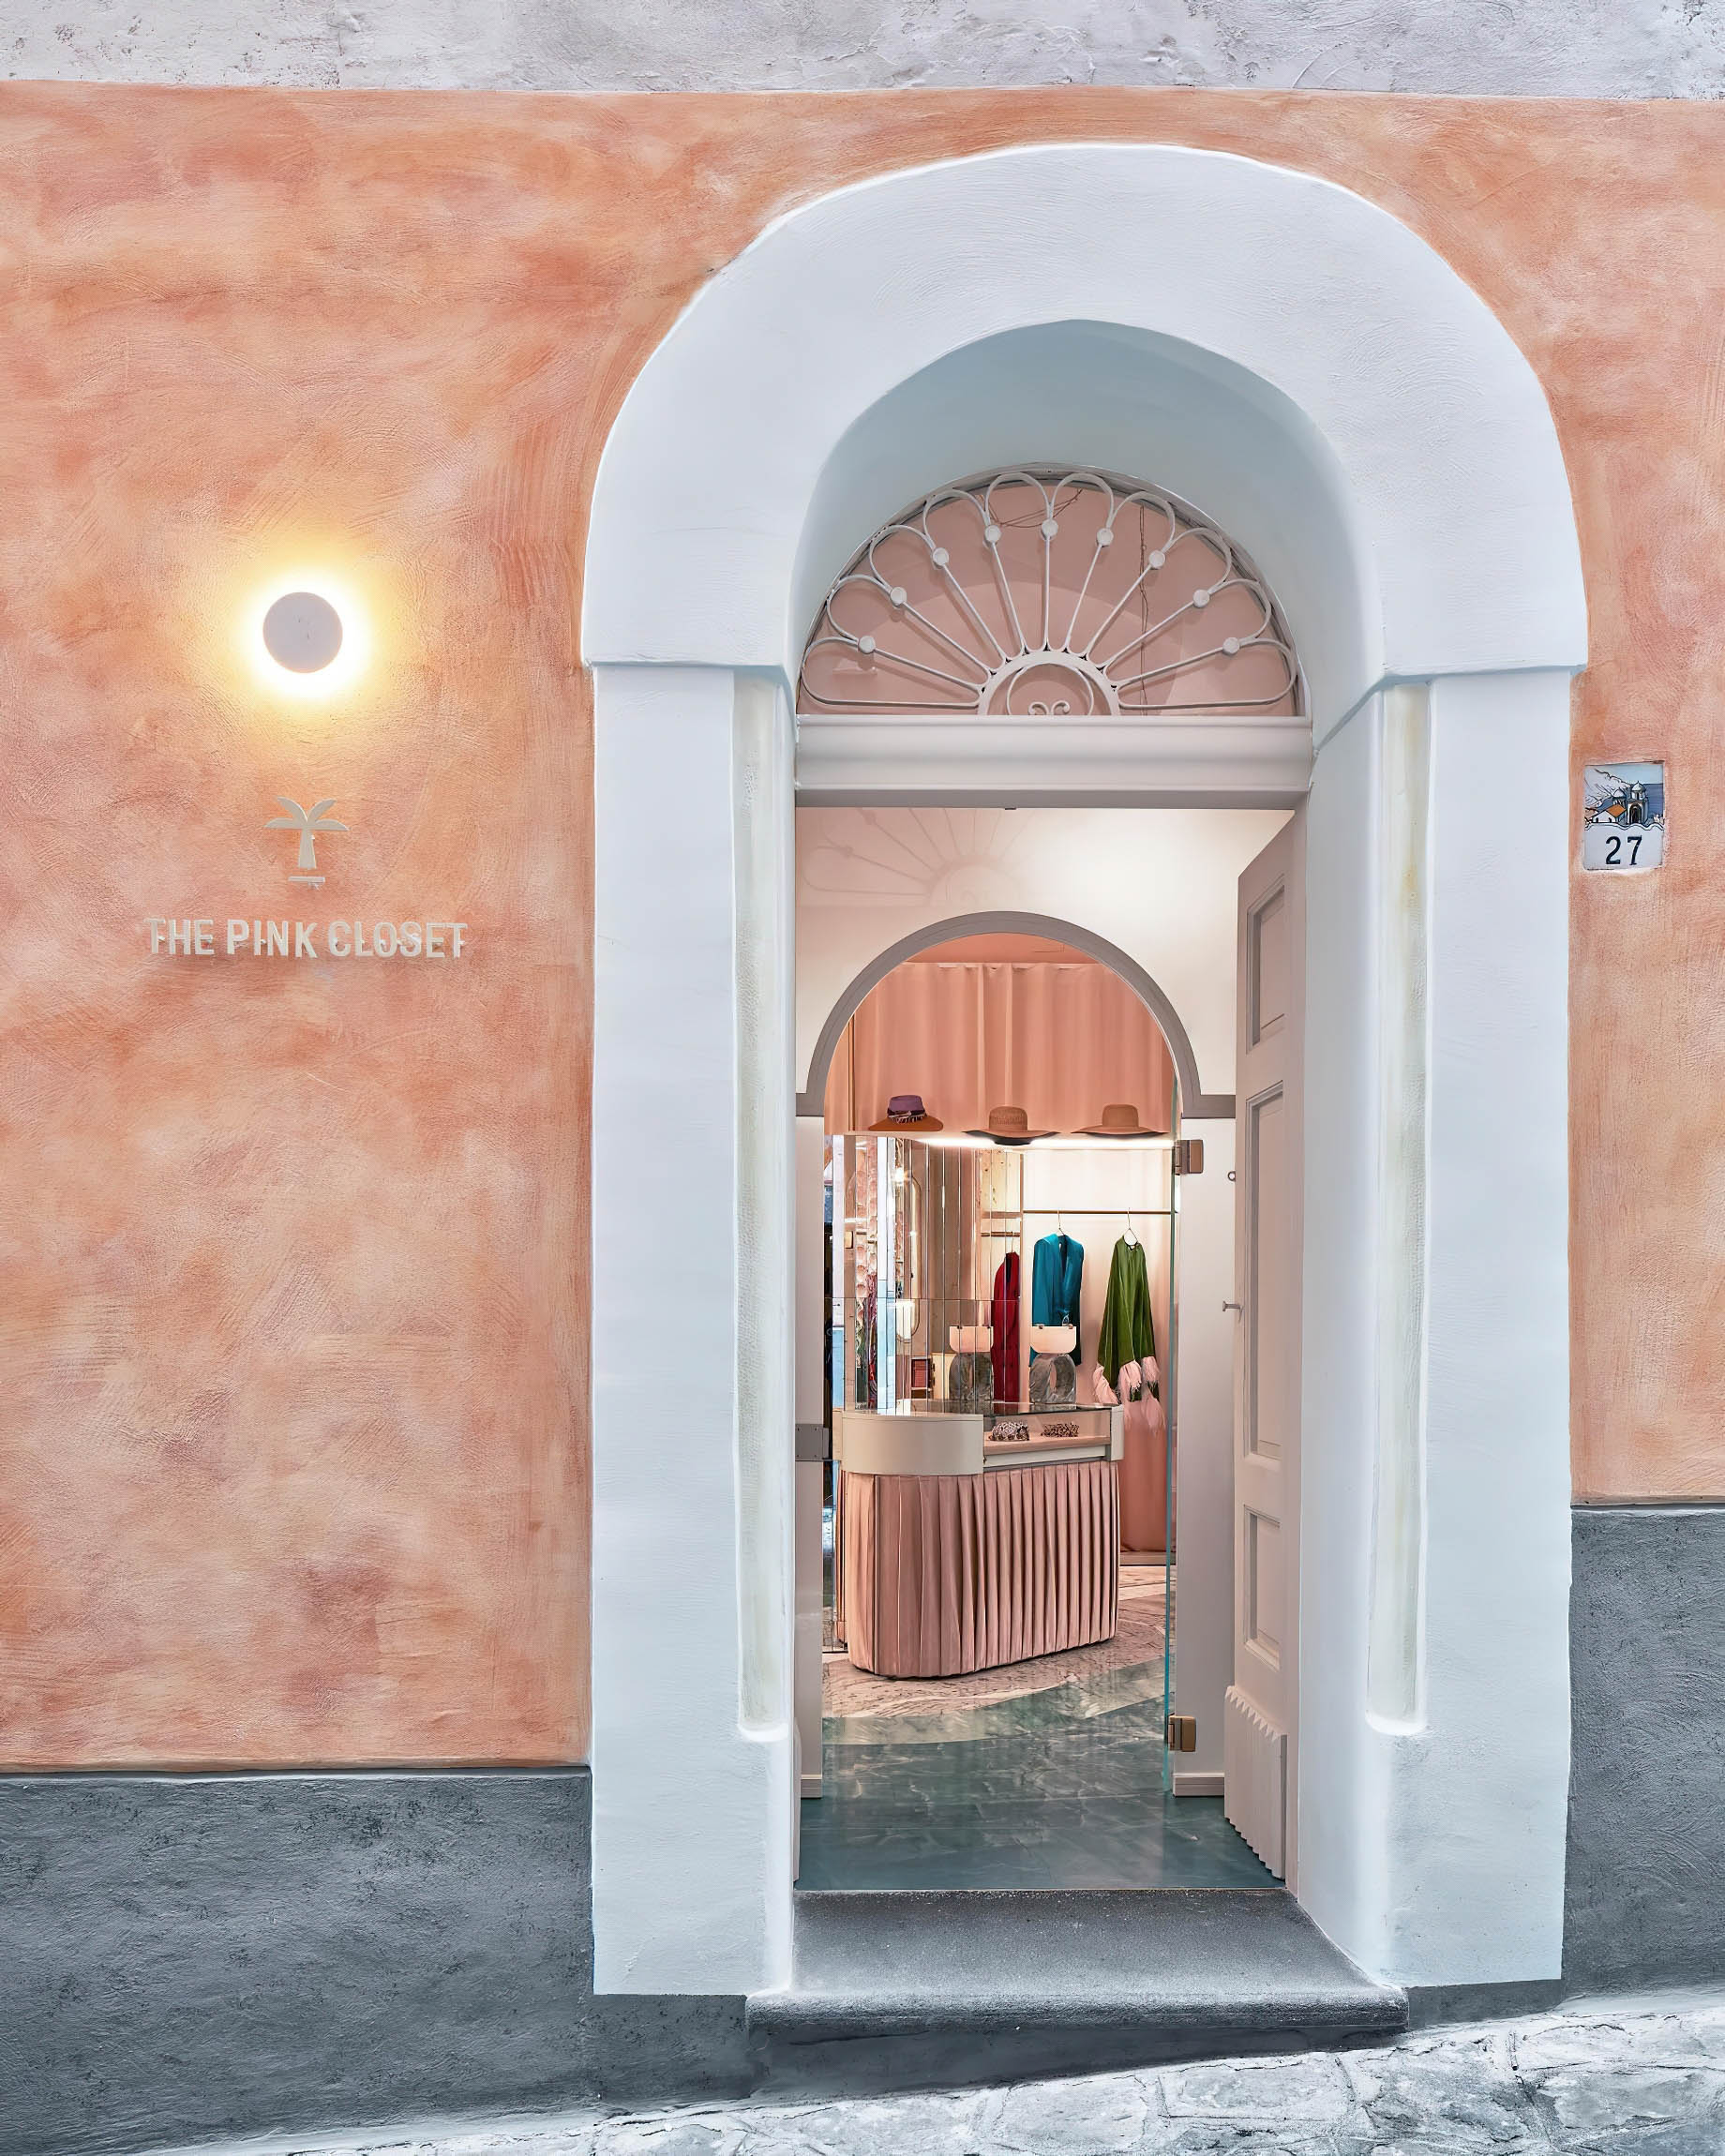 Palazzo Avino Hotel – Amalfi Coast, Ravello, Italy – The Pink Closet